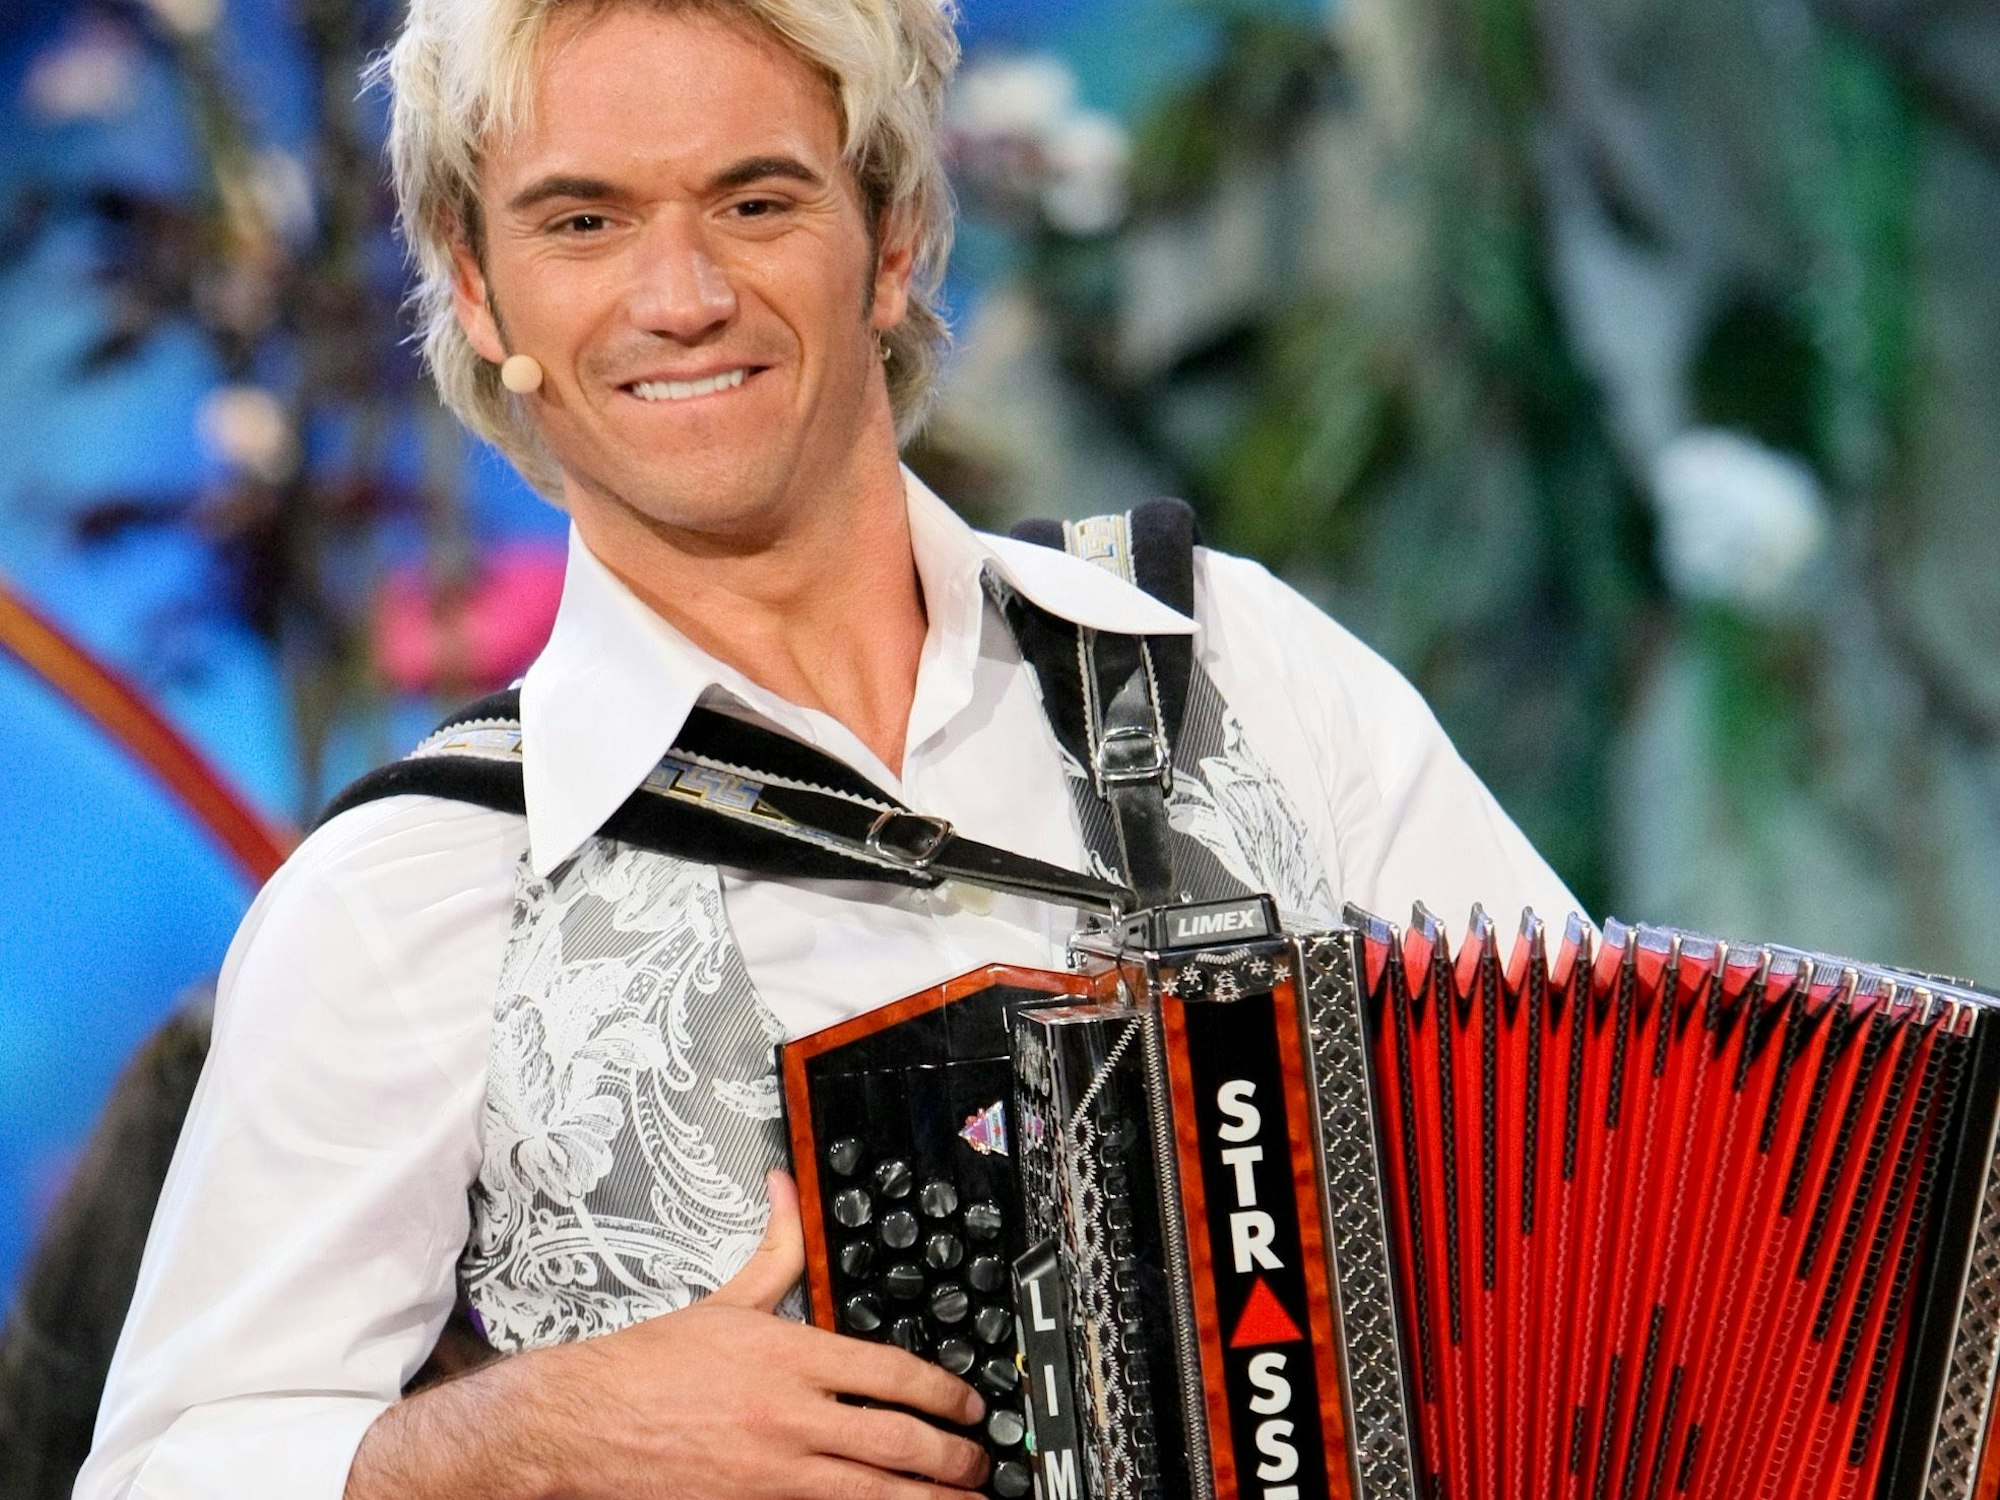 Auch wenn er 2009 schon lange kein Harmonika-Bubi mehr war, gehörte das Akkordeon immer noch zu Florian Silbereisens Auftritten dazu.